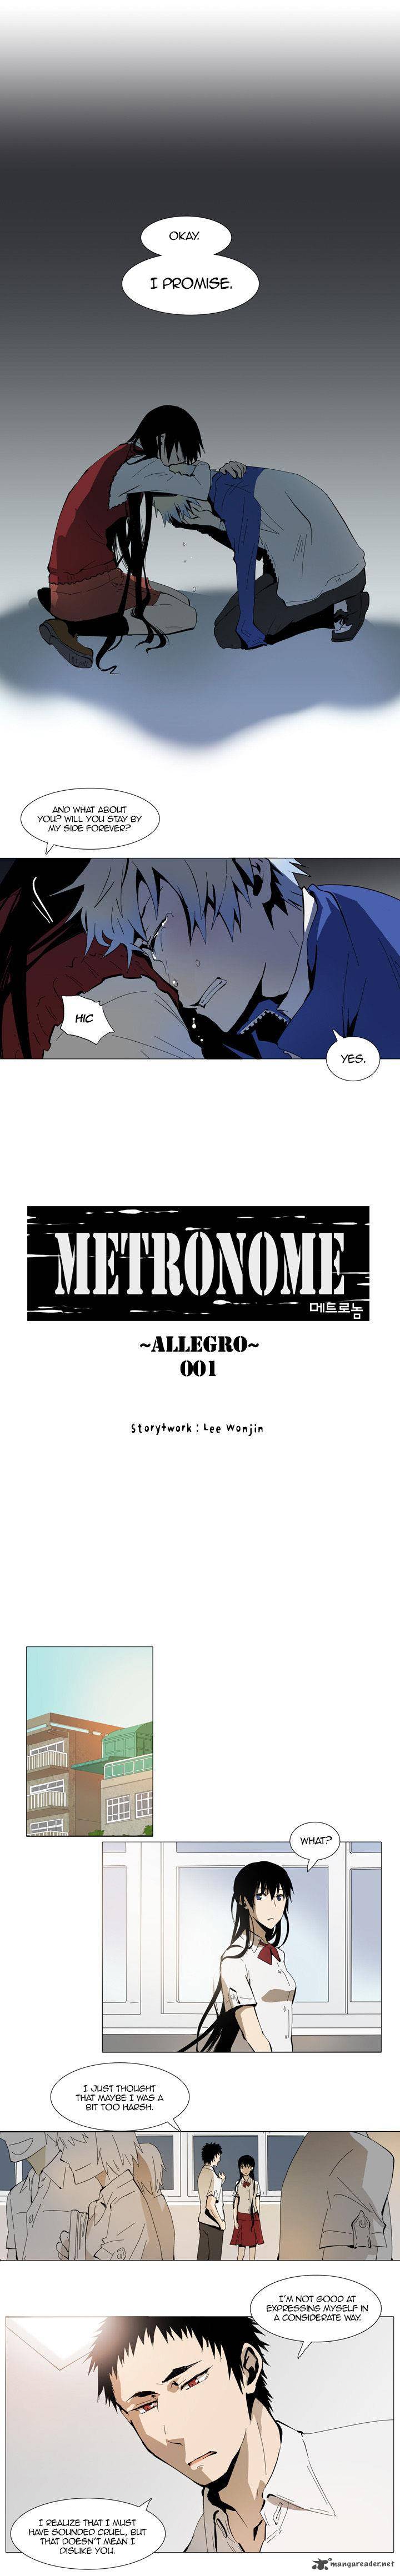 Metronome 21